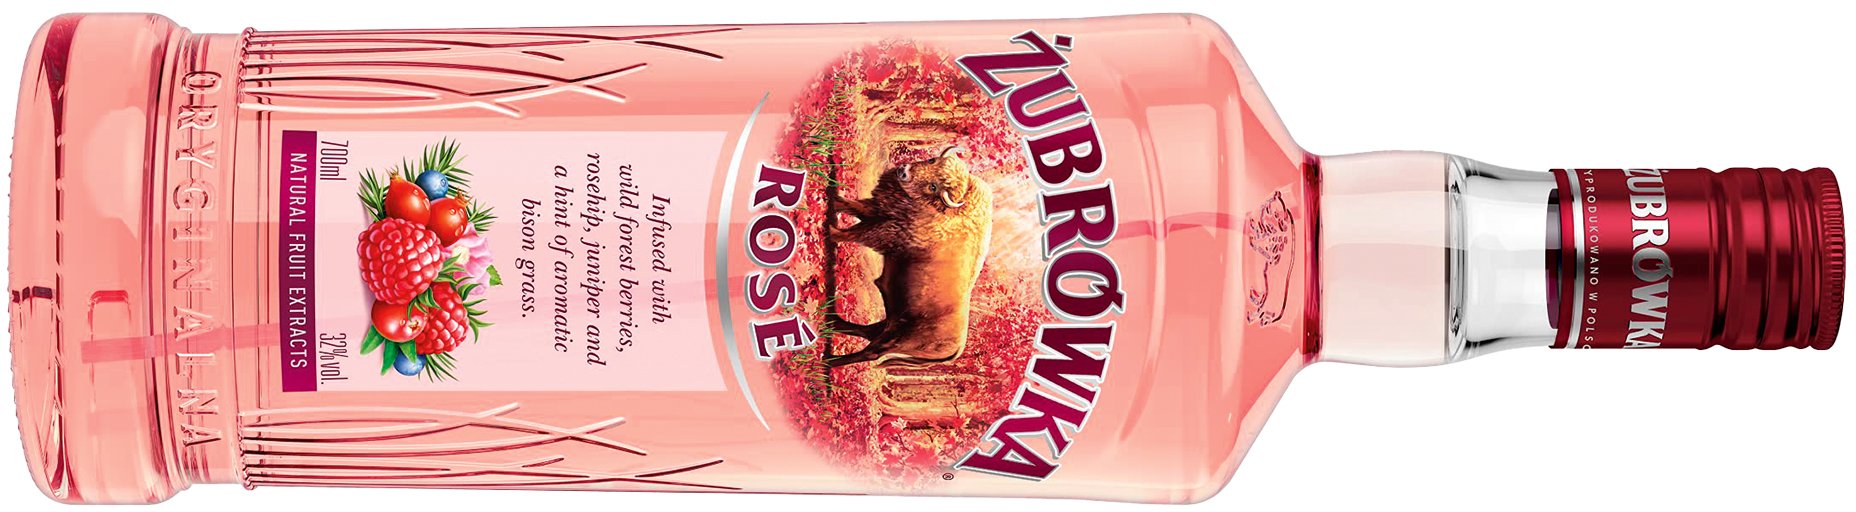 Mit Extrakten von Himbeeren, Preiselbeeren und Hagebutten sowie einem reduzierten Alkoholgehalt bedient Żubrówka Rosé den anhaltenden Aperitif-Trend.